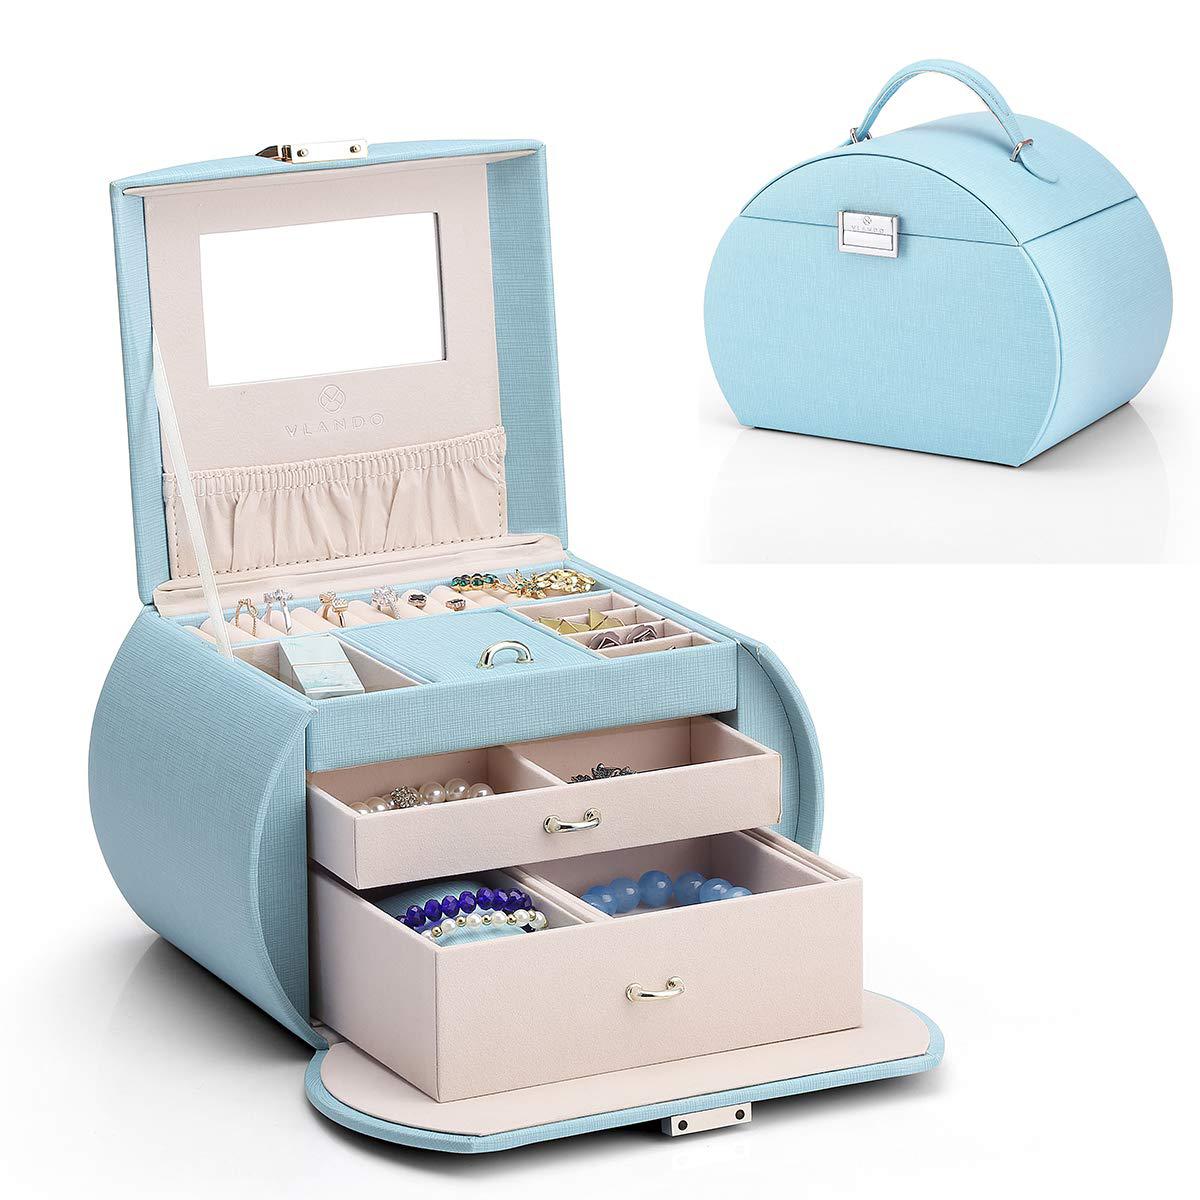 vlando princess style medium size jewelry box, fabulous girls gifts (blue)